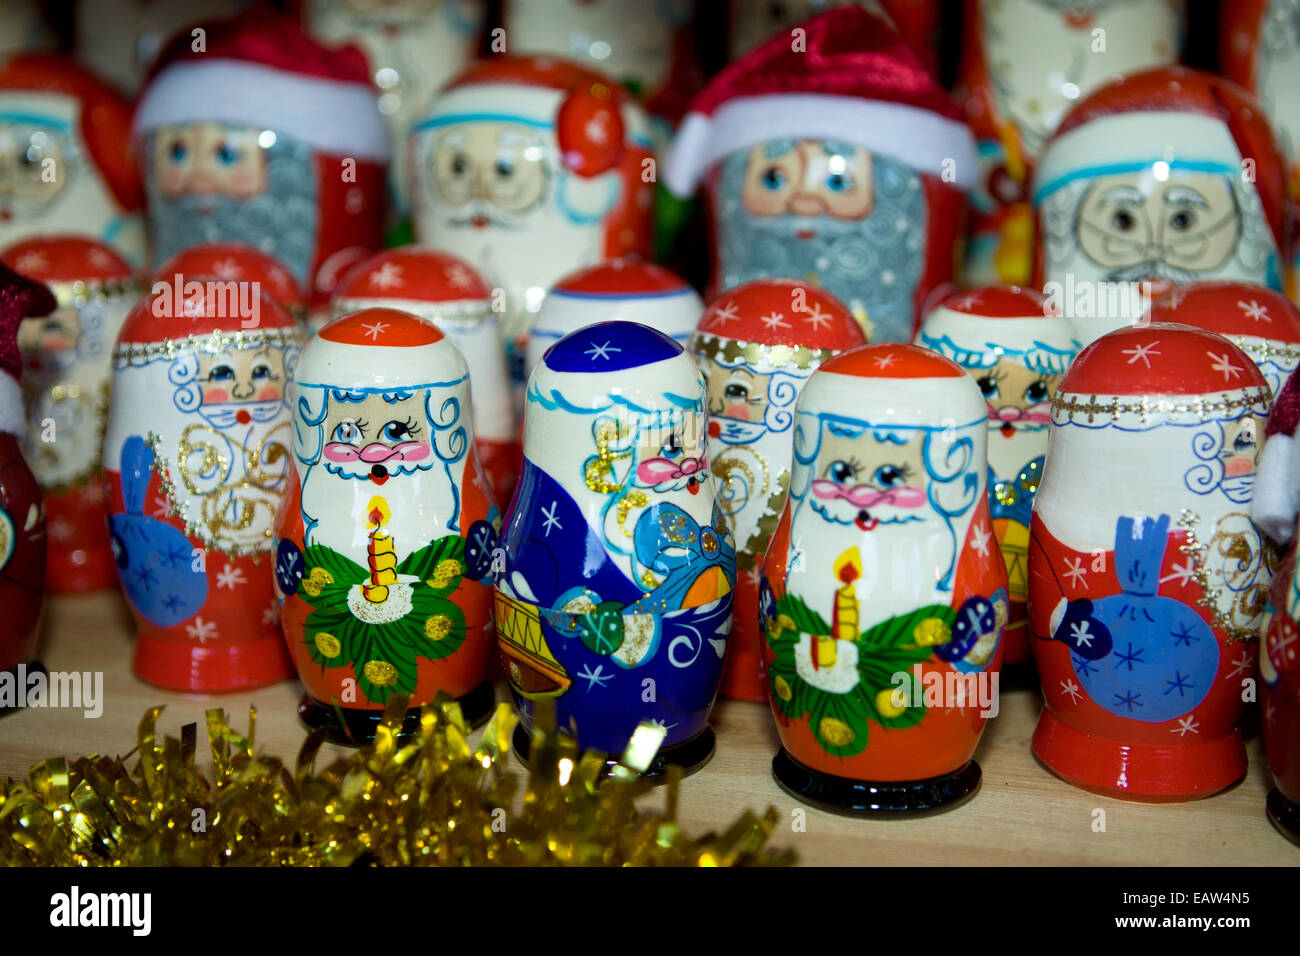 Weihnachten kontinentalen Markt Belfast UK. 17. November 2014. Russische Matroschka Puppen mit Weihnachtsmann Dekoration Stockfoto